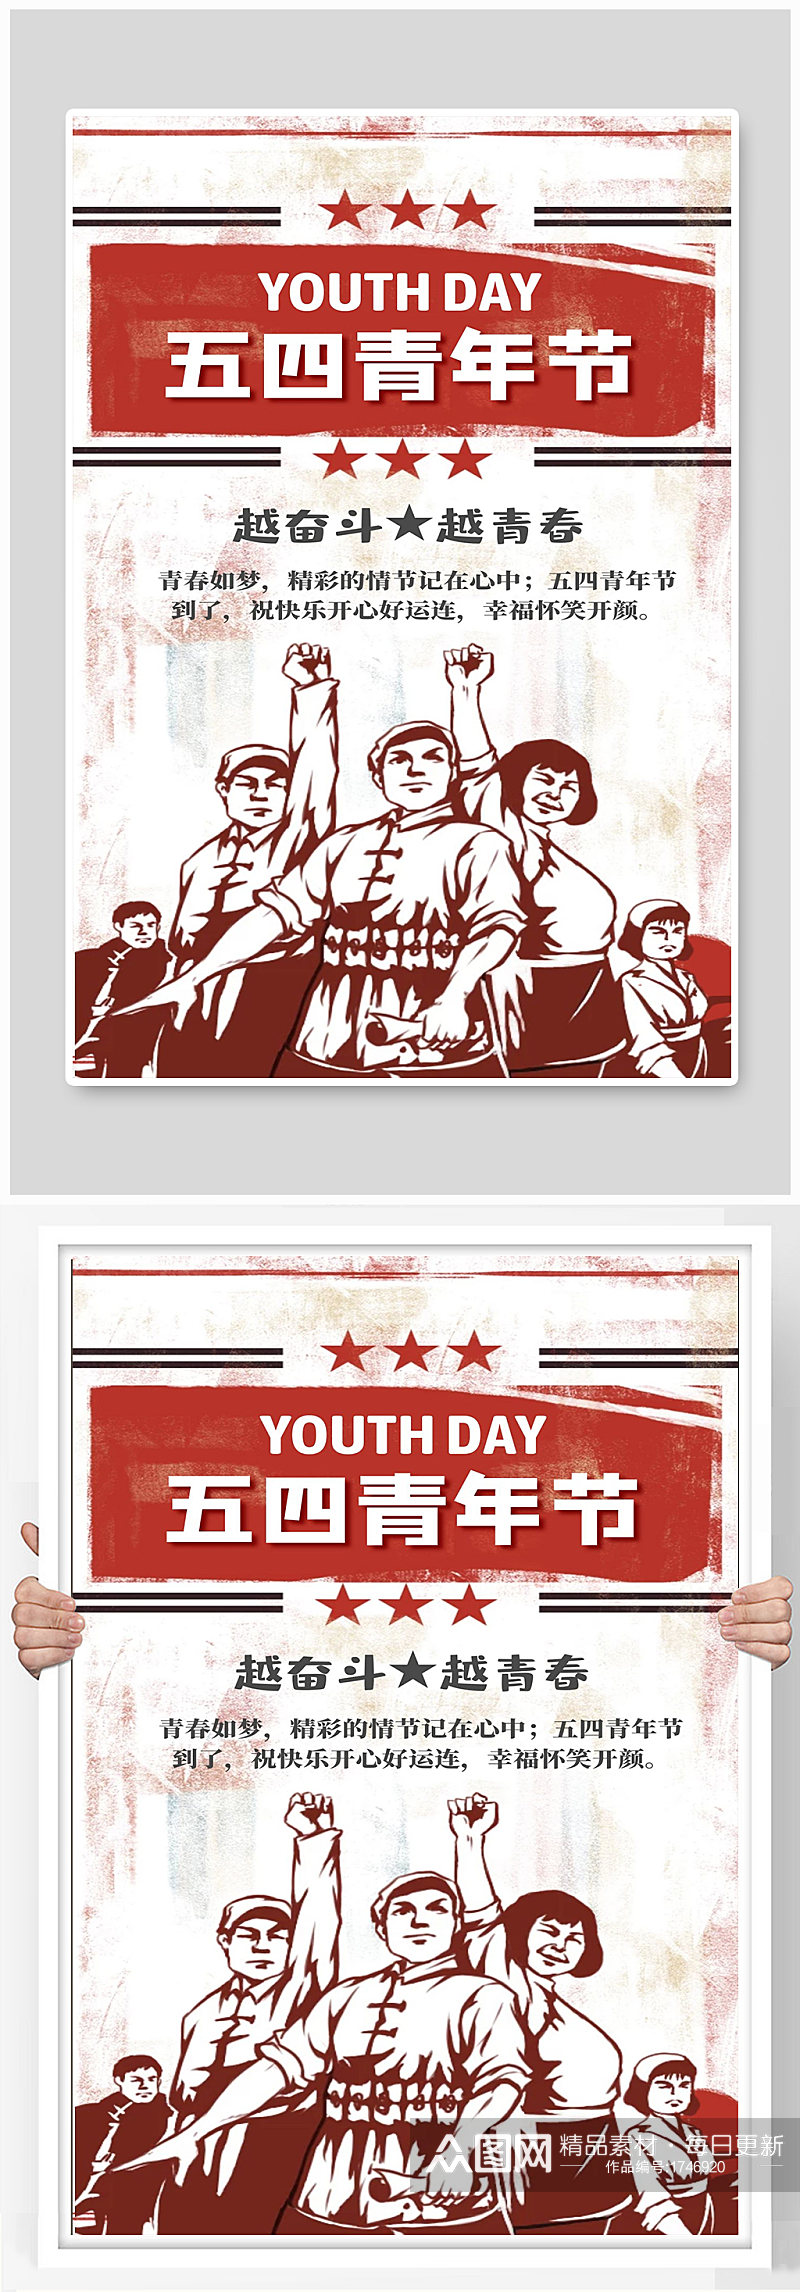 五四青年节宣传海报设计制作素材